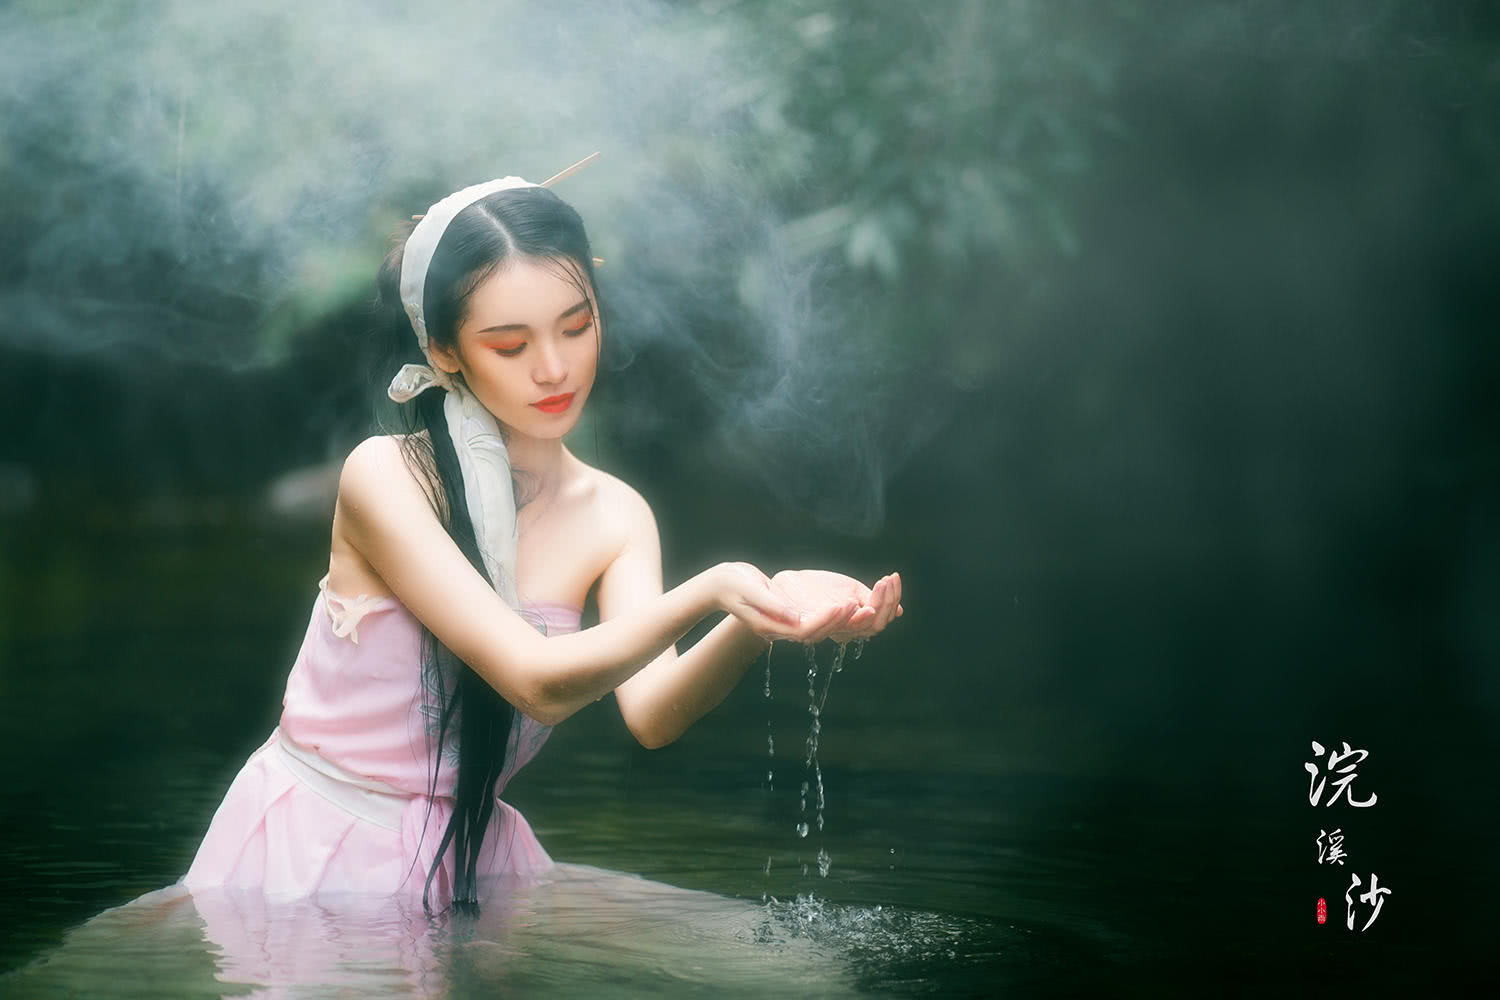 摄影师拍下美人出浴的瞬间,小姐姐好像《青蛇》中的王祖贤